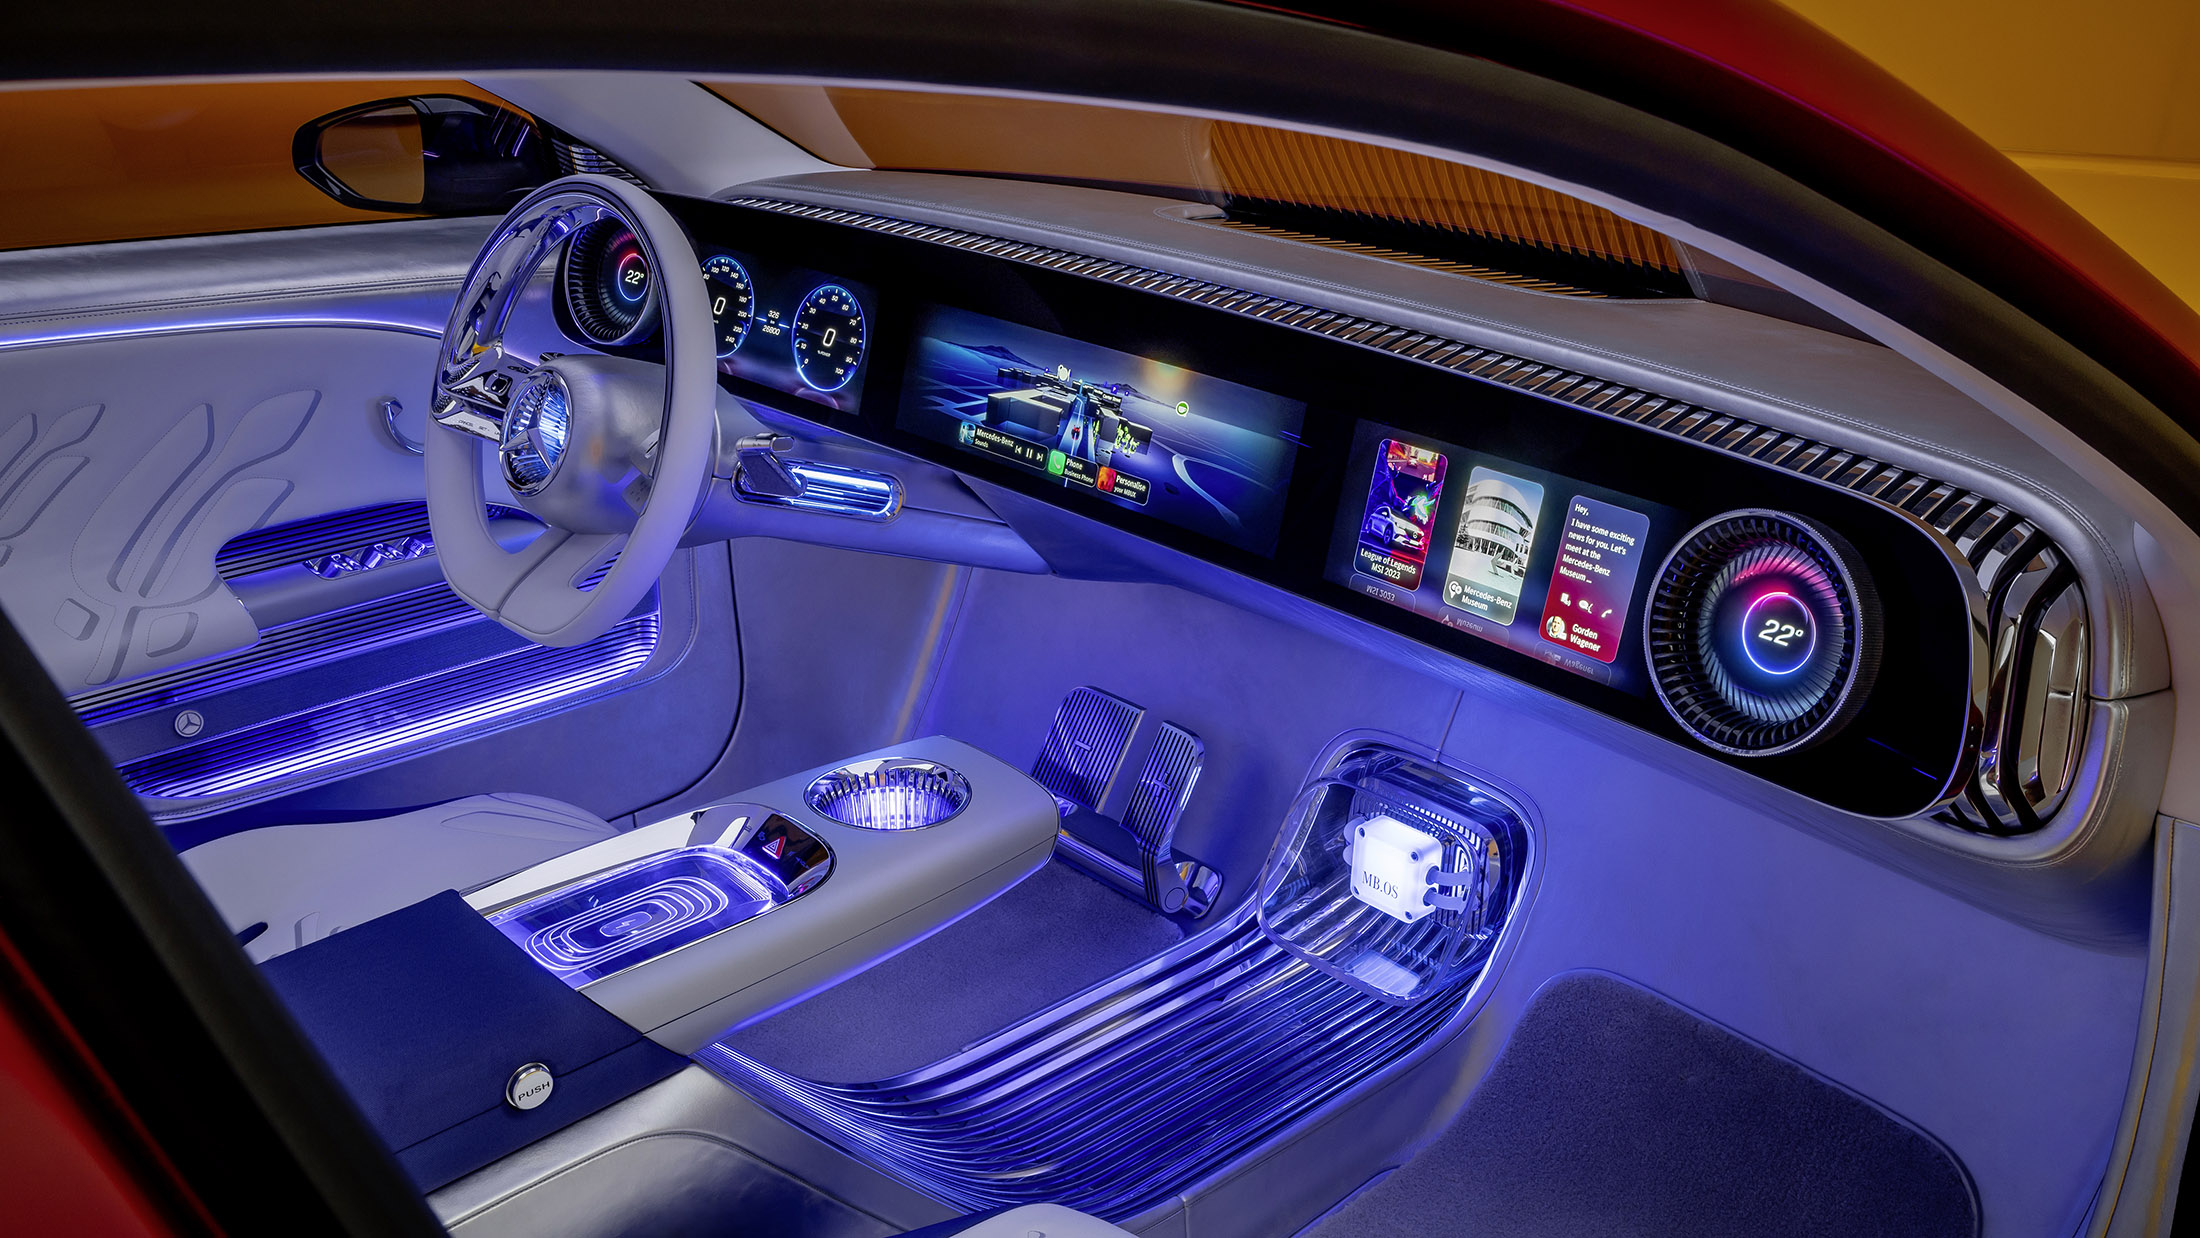 Le concept EV Mercedes-Benz offre une autonomie supérieure à celle de Tesla et une recharge rapide